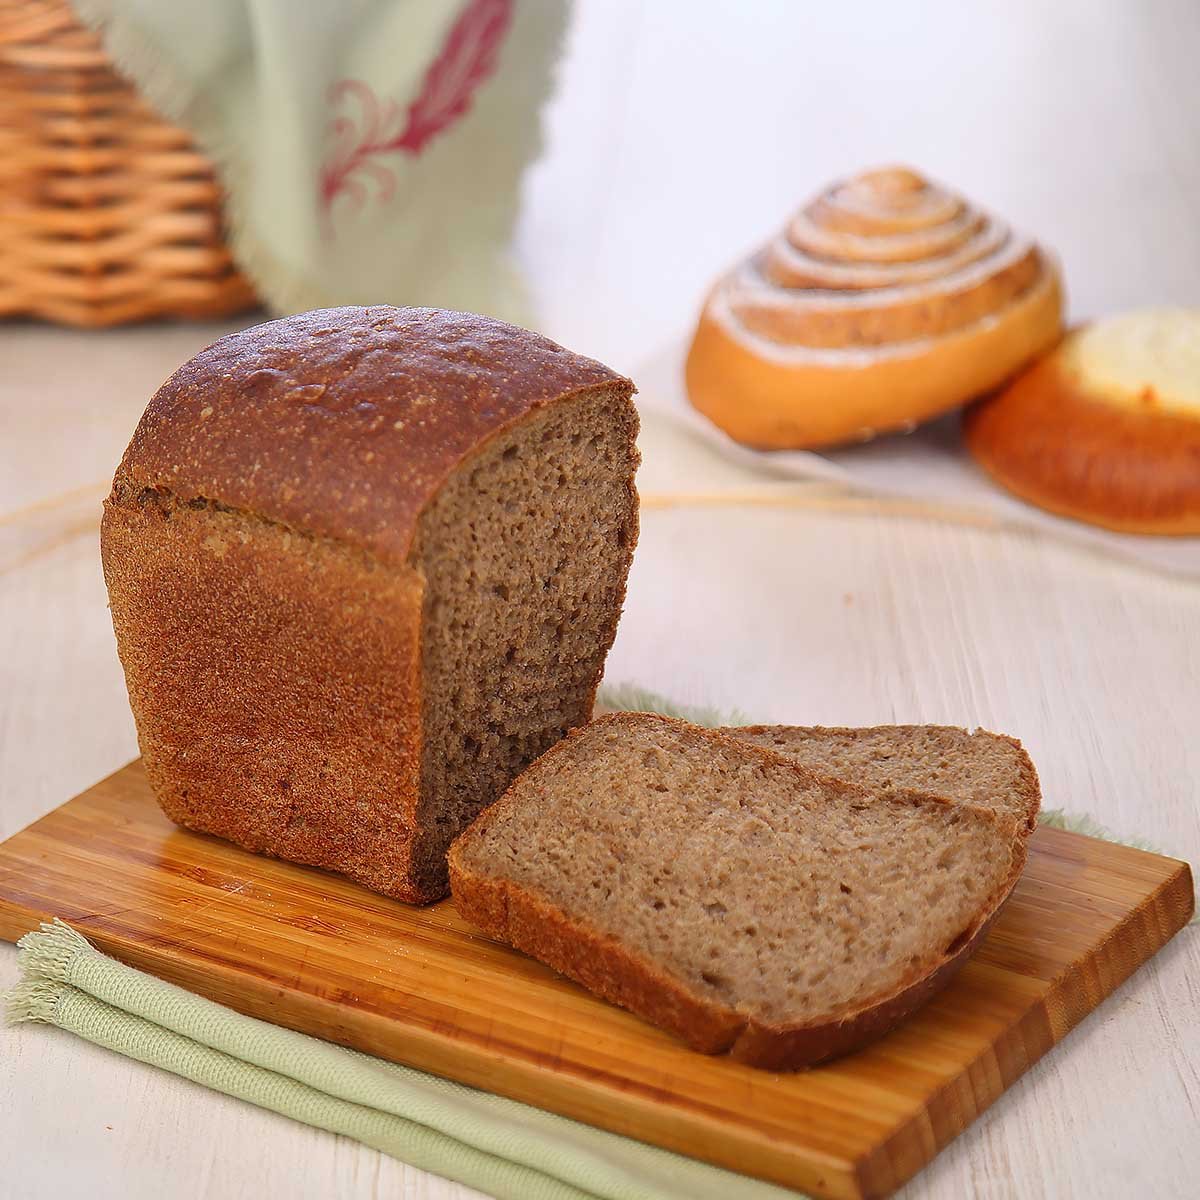 Хлеб пшеничный ржаной на сухих дрожжах. Ржано-пшеничный хлеб. Хлеб деревенский ржано-пшеничный. Хлеб ржано-пшеничный украинский. Ржано-пшеничный хлеб ржано-пшеничный хлеб.